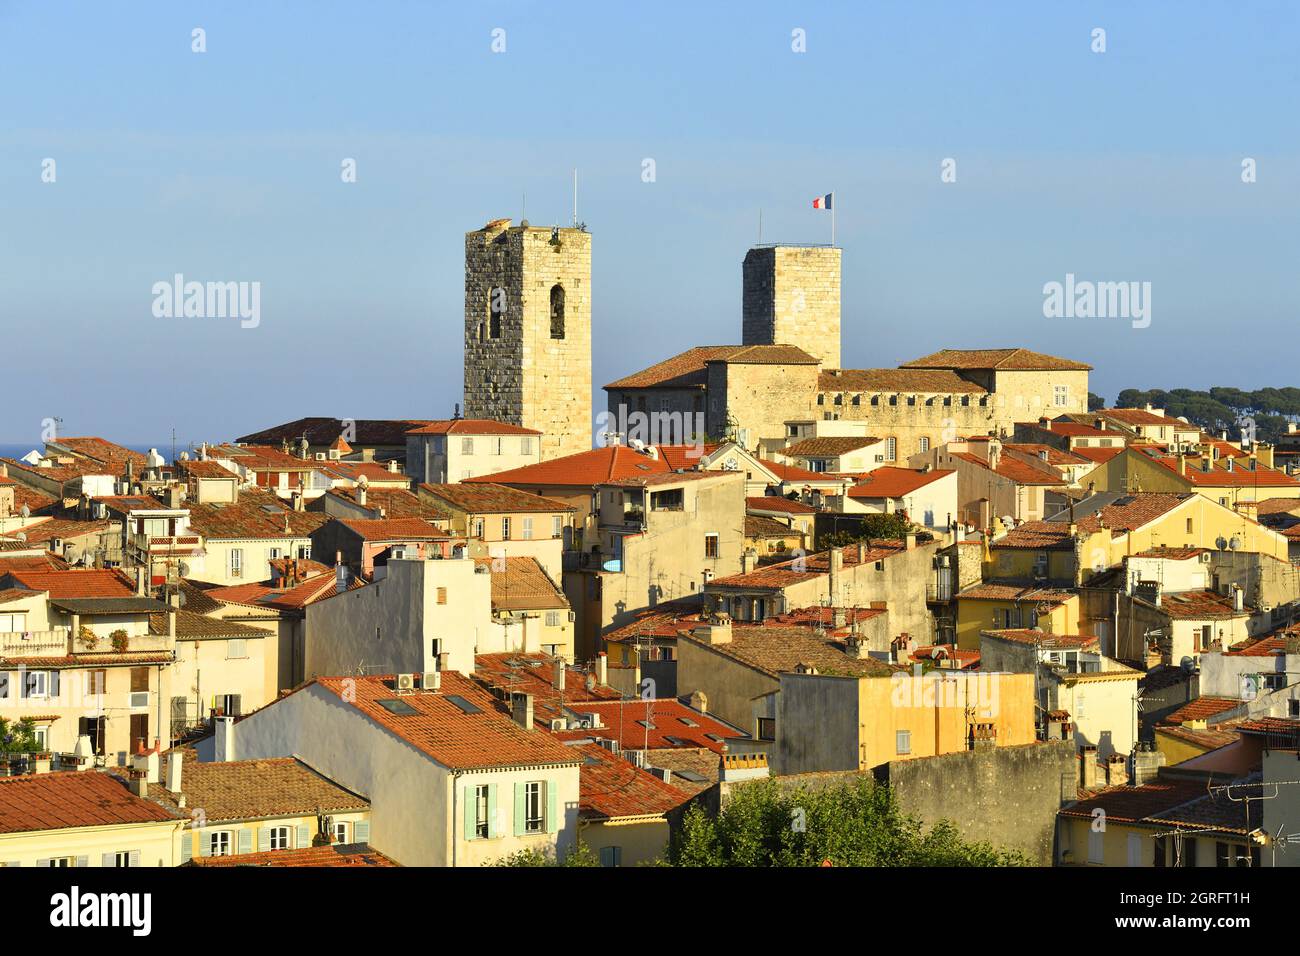 Francia, Alpes Maritimes, Antibes, la città vecchia lasciando apparire le due torri saracene del Museo Picasso e la Cattedrale Notre Dame dell'Immacolata Concezione Foto Stock